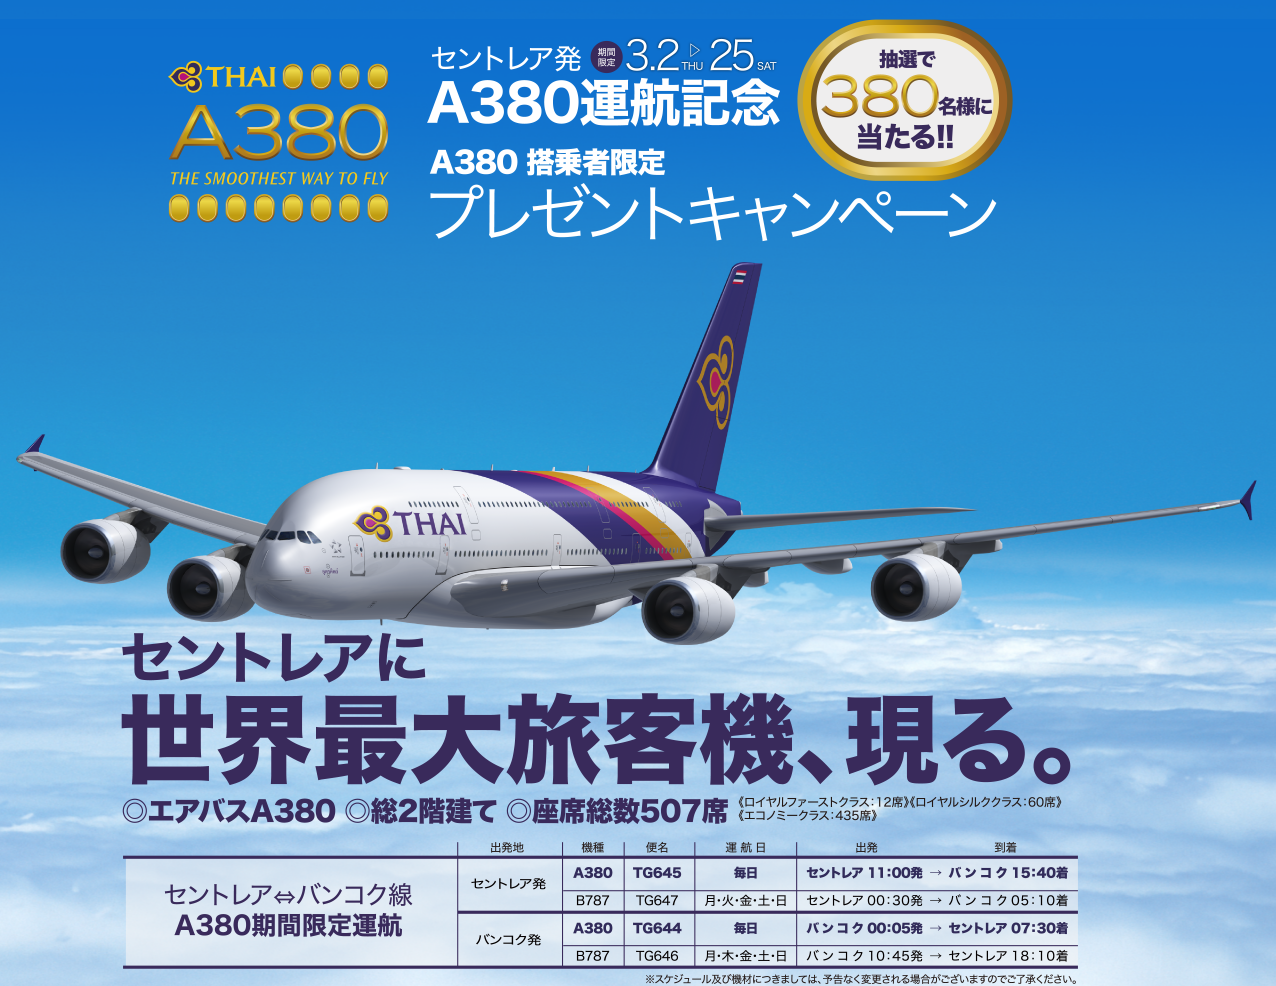 セントレア発A380運航記念 A380 搭乗者限定プレゼントキャンペーン